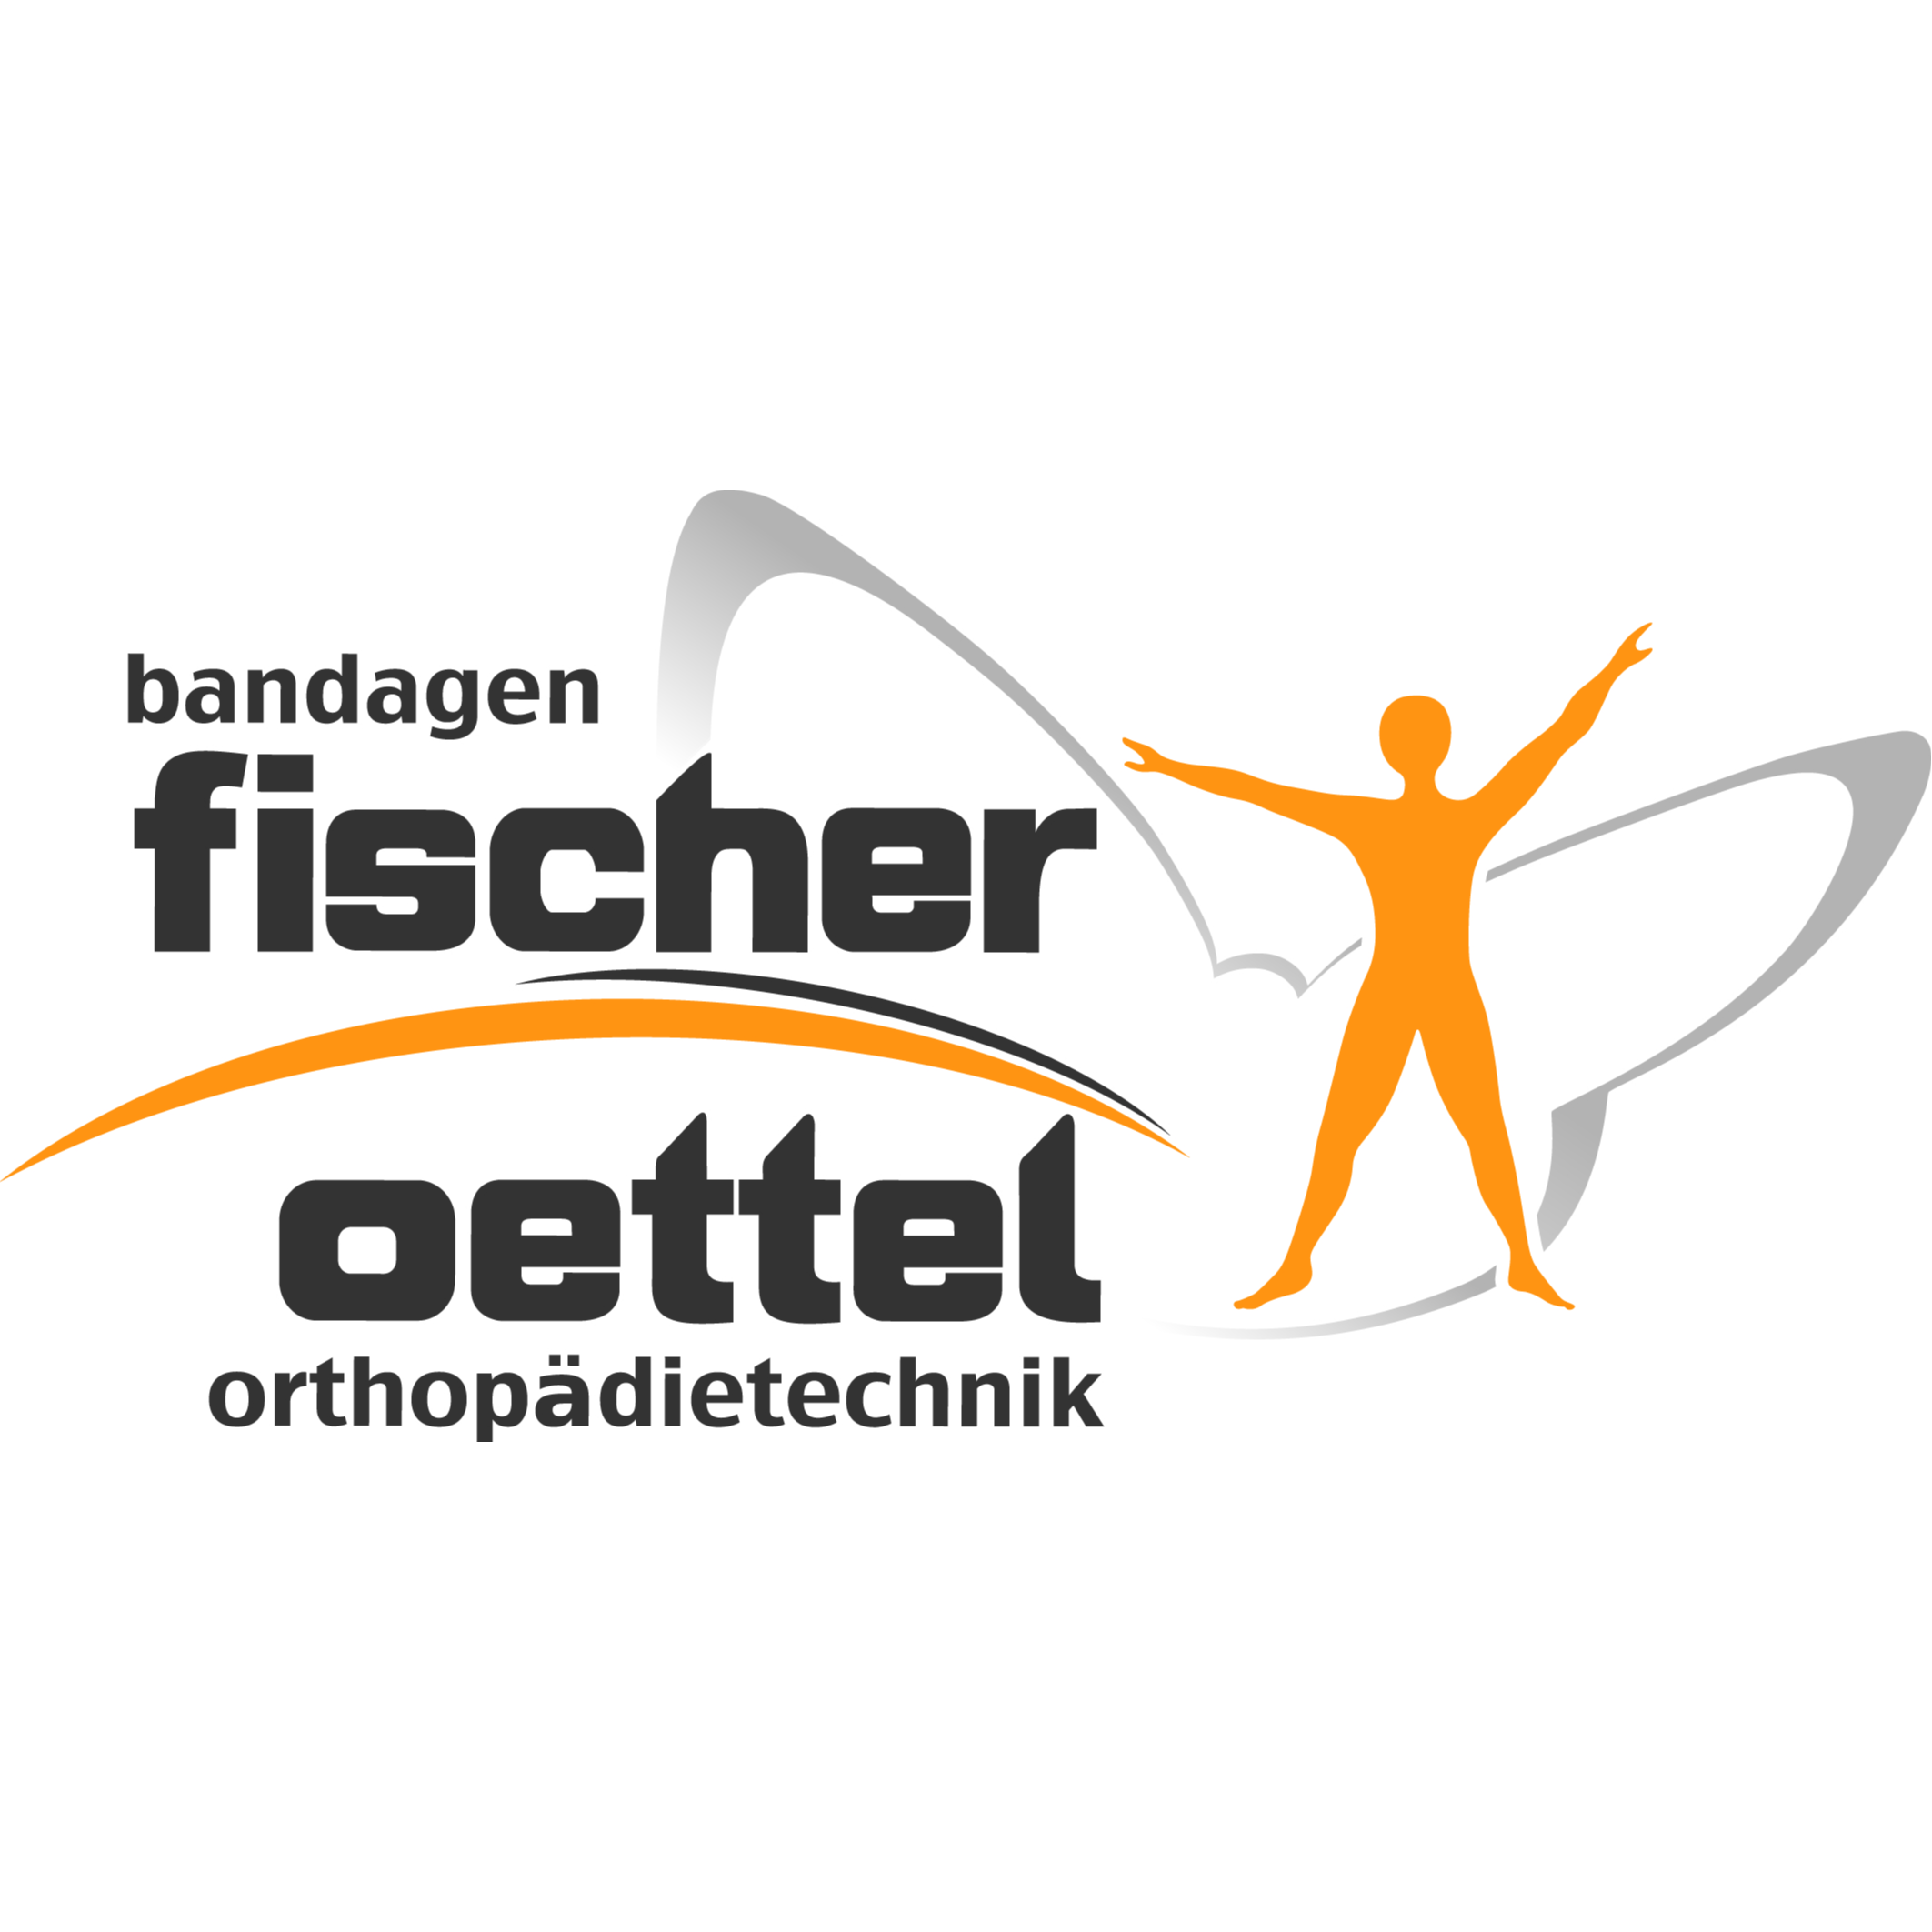 Bandagen Fischer Oettel Orthopädietechnik in Bad Elster - Logo